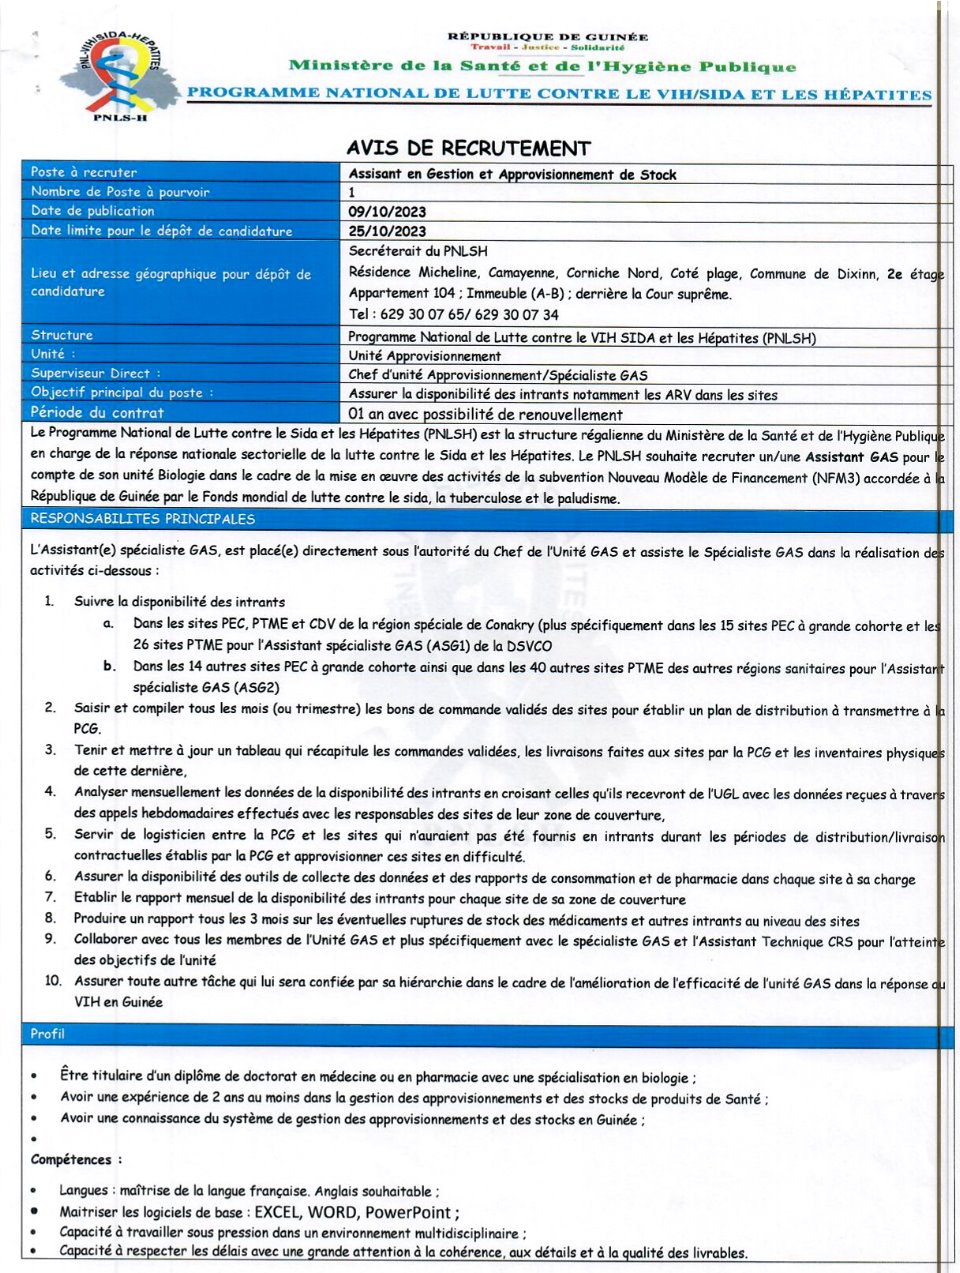 Avis de recrutement d'un Assistant en Gestion et Approvisionnement de Stock | page 1